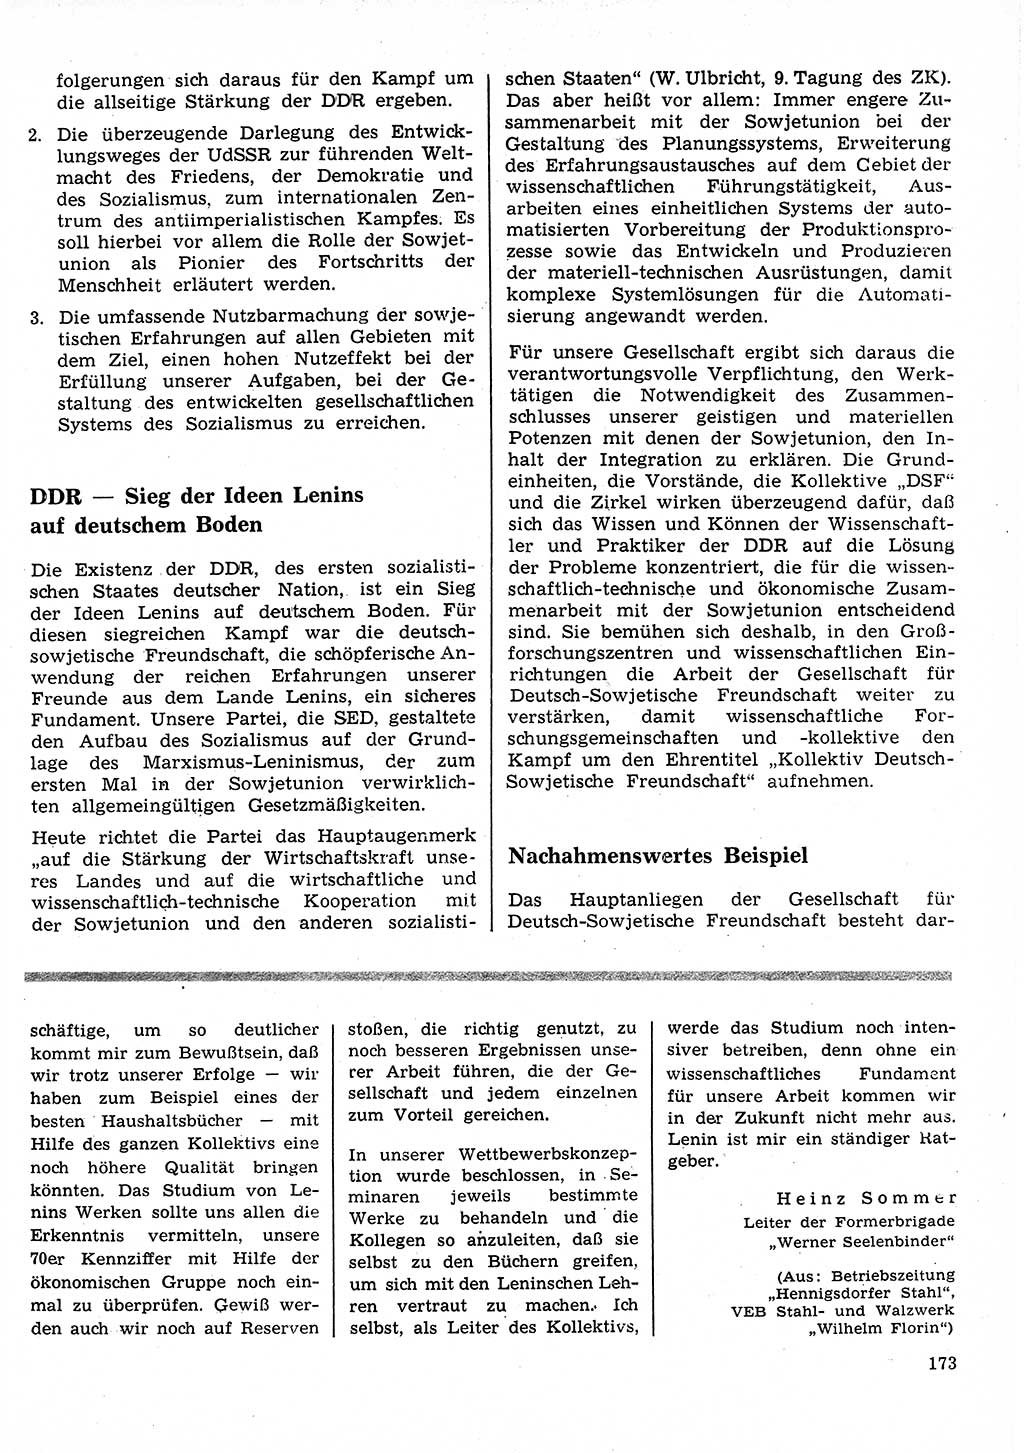 Neuer Weg (NW), Organ des Zentralkomitees (ZK) der SED (Sozialistische Einheitspartei Deutschlands) für Fragen des Parteilebens, 25. Jahrgang [Deutsche Demokratische Republik (DDR)] 1970, Seite 173 (NW ZK SED DDR 1970, S. 173)